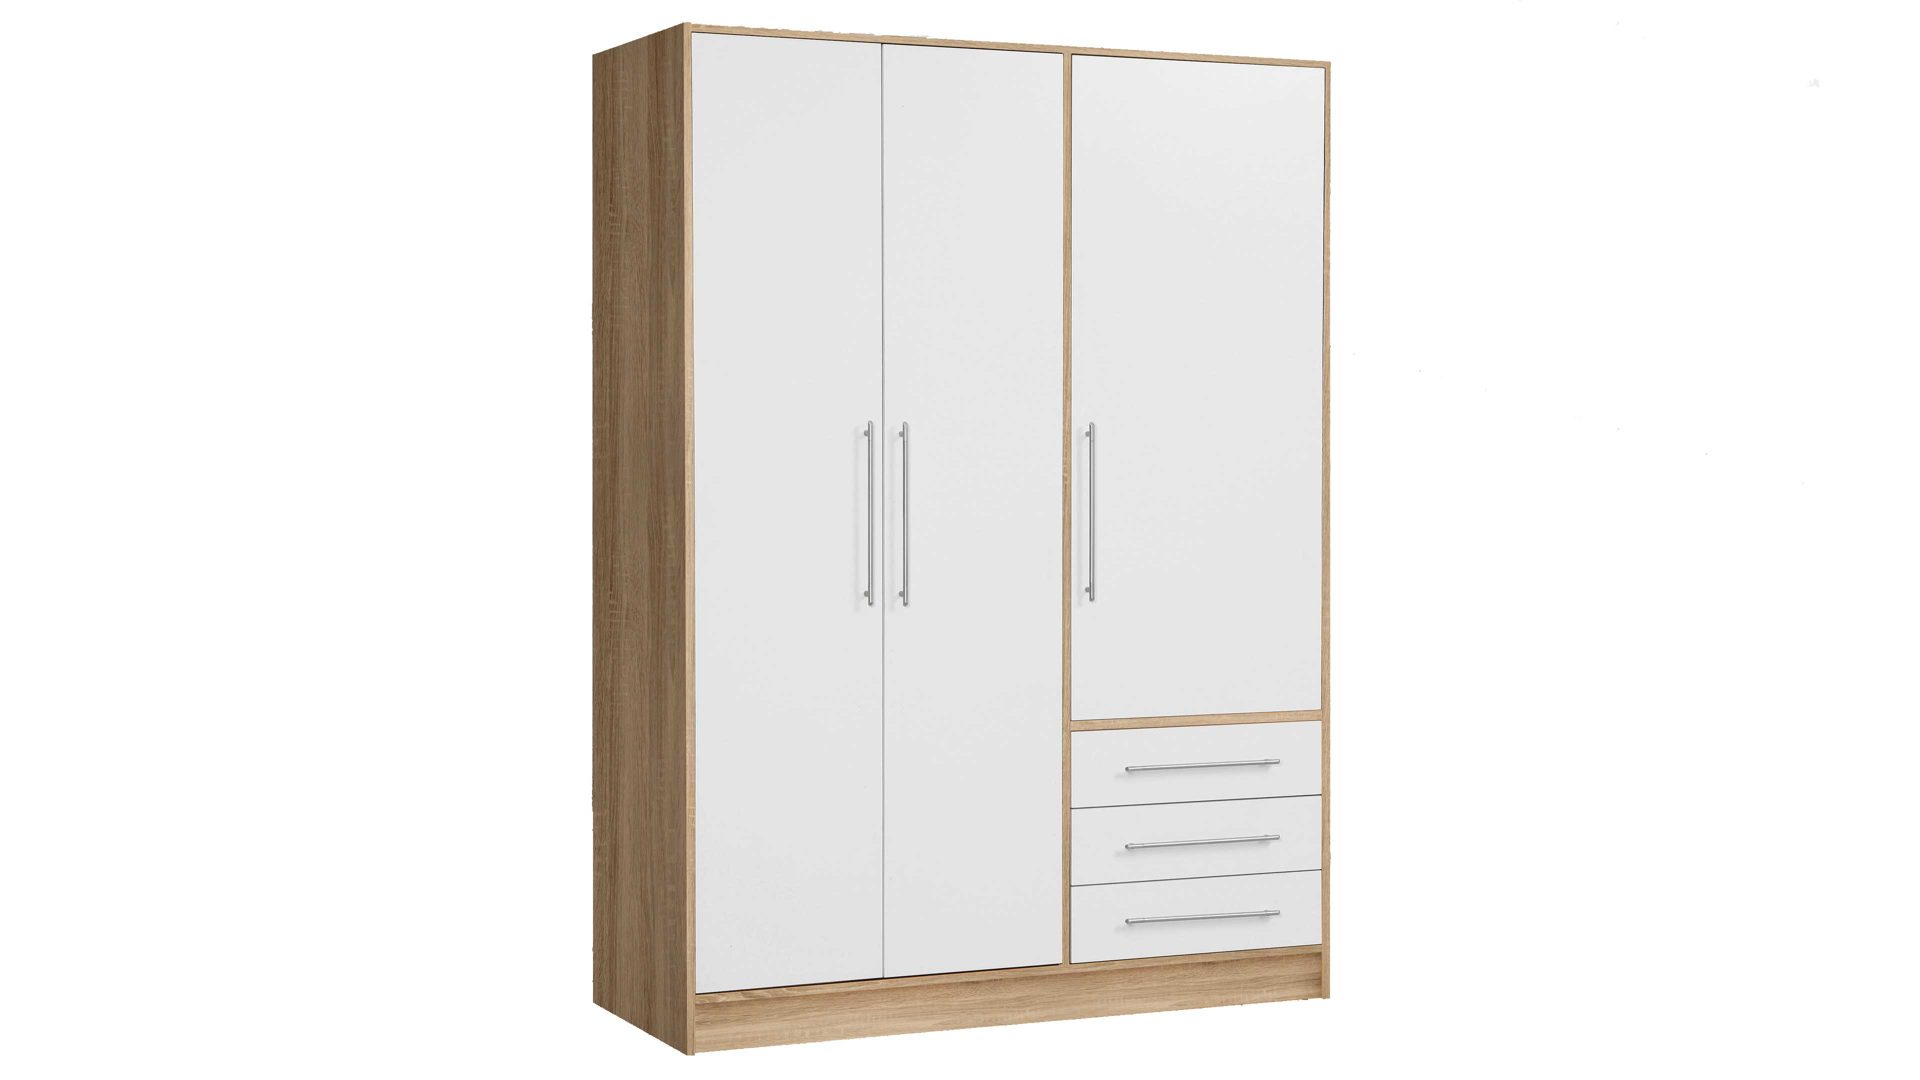 Kleiderschrank Forte aus Holz in Holzfarben Kleiderschrank Jupiter Sonoma Eiche & Weiß – drei Türen, drei Schubladen